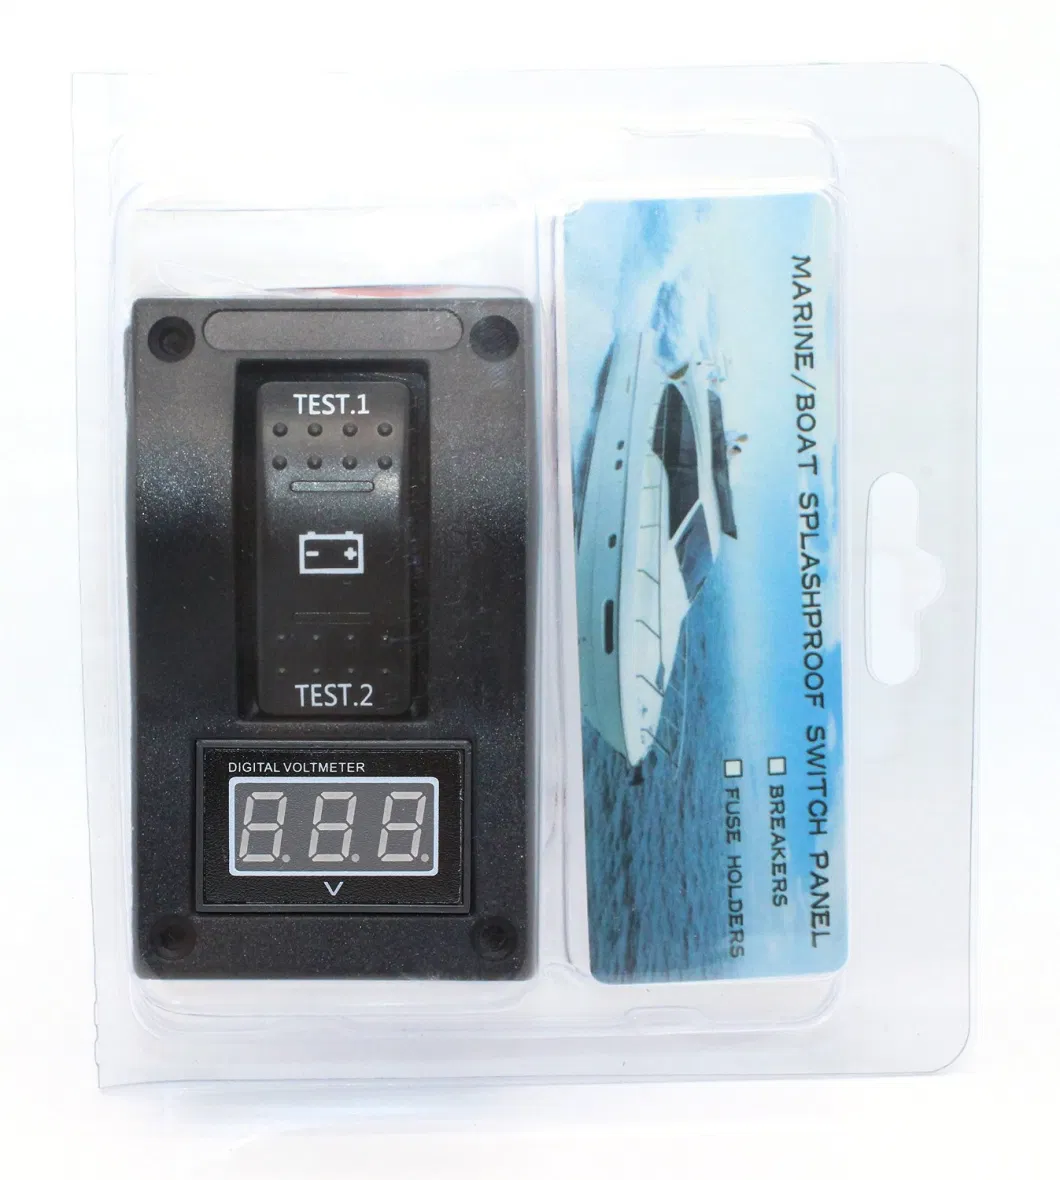 5-30V Digital Voltmeter Battery Test Panel Rocker Switch Dpdt/on-off-on Rocker Switch